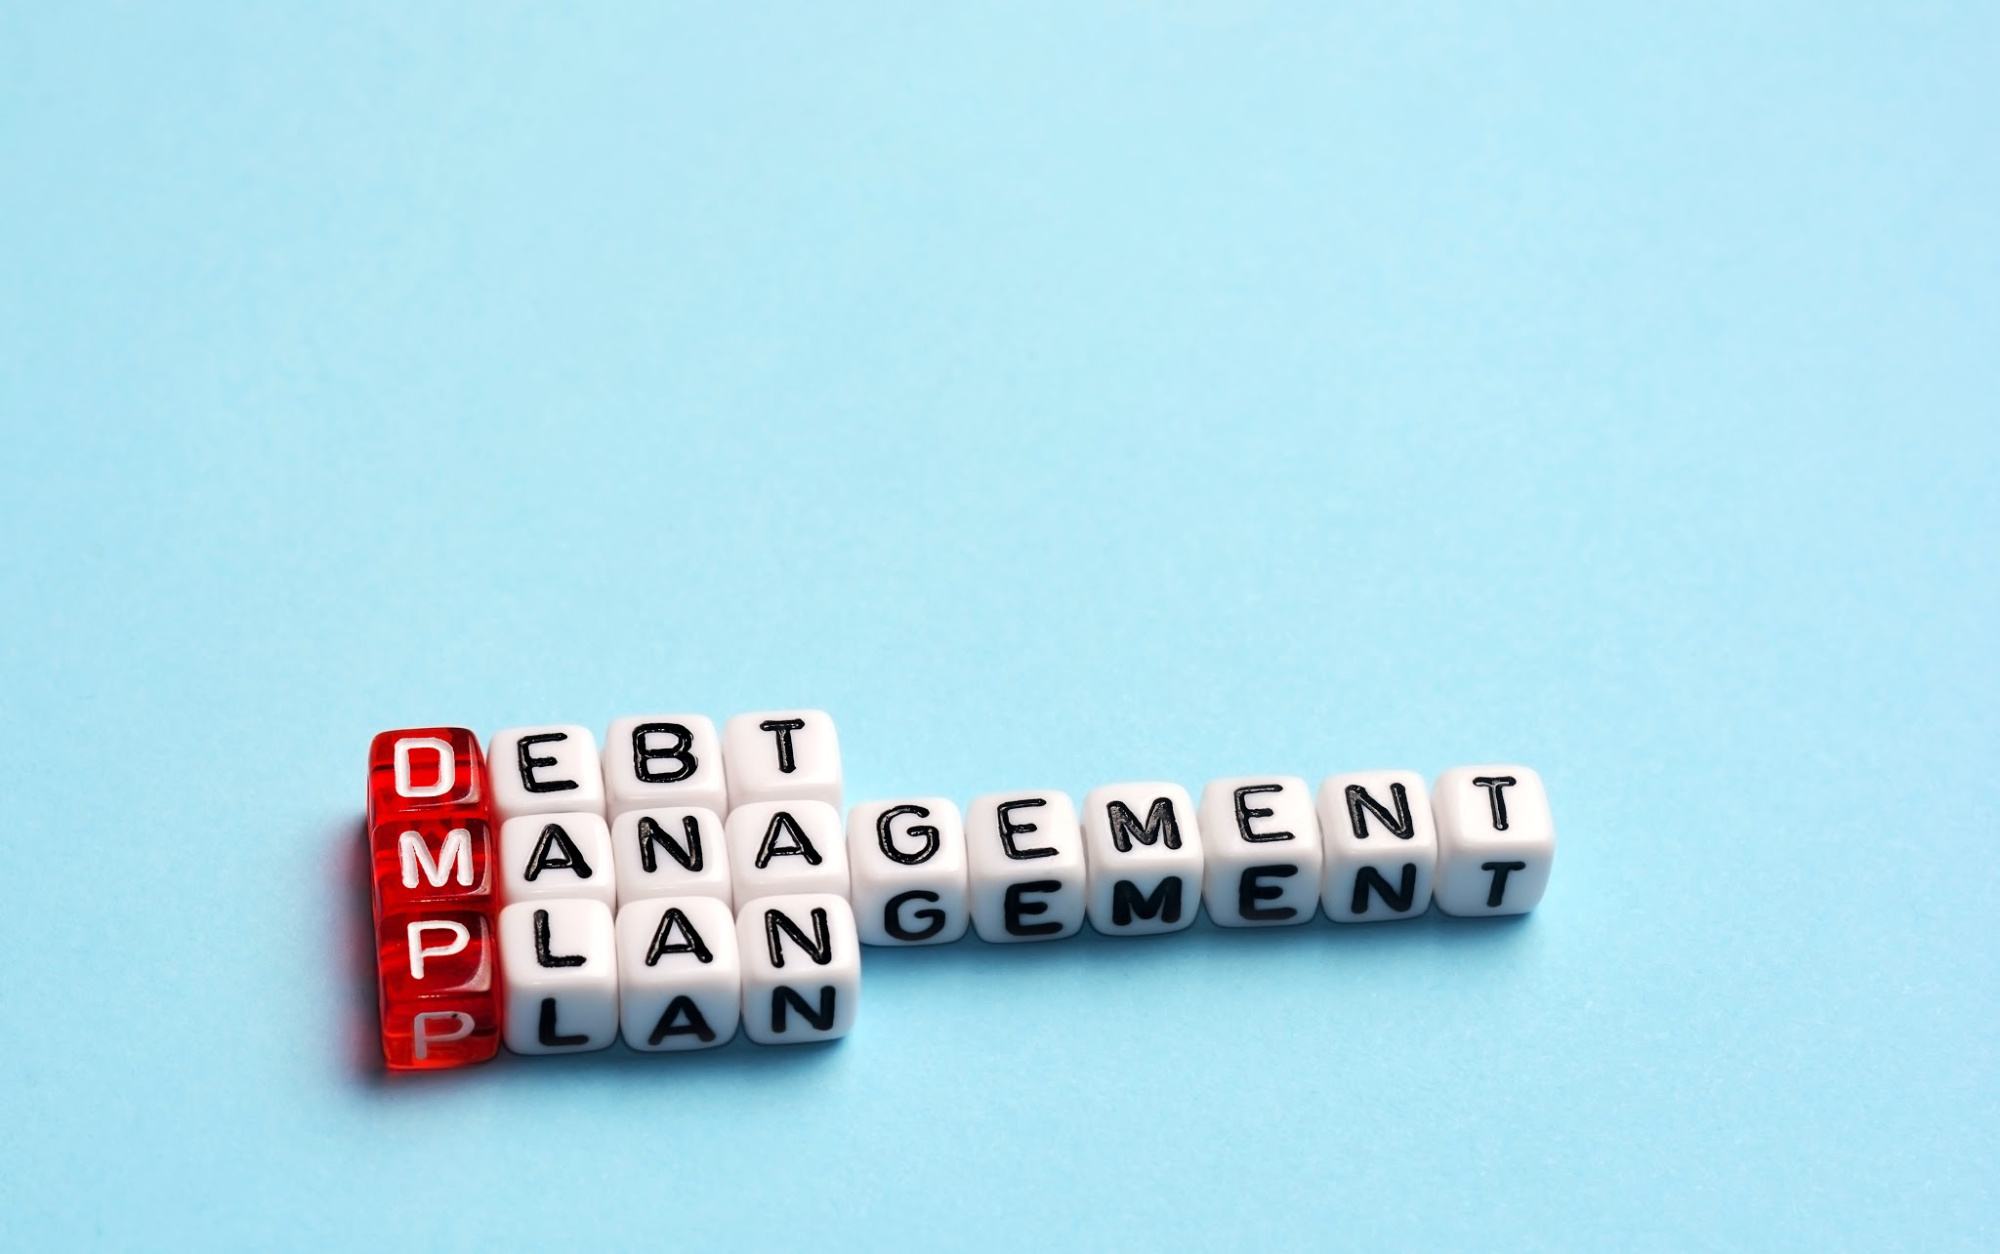 Debt Management Plans for families